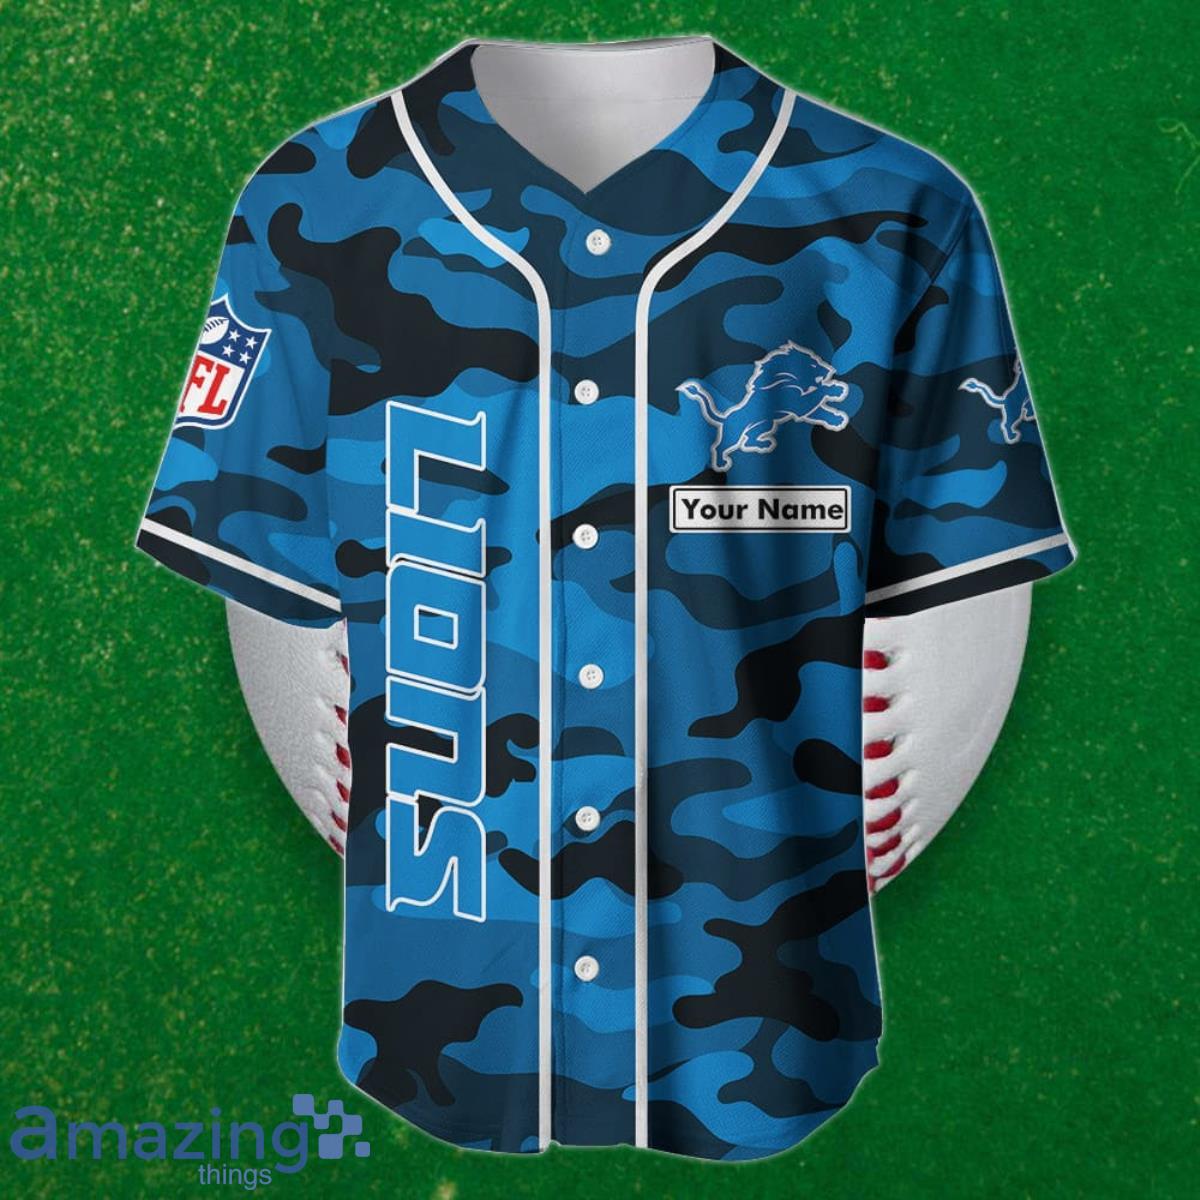 Detroit Lions Custom Name Baseball Jersey NFL Shirt Best Gift For Fans